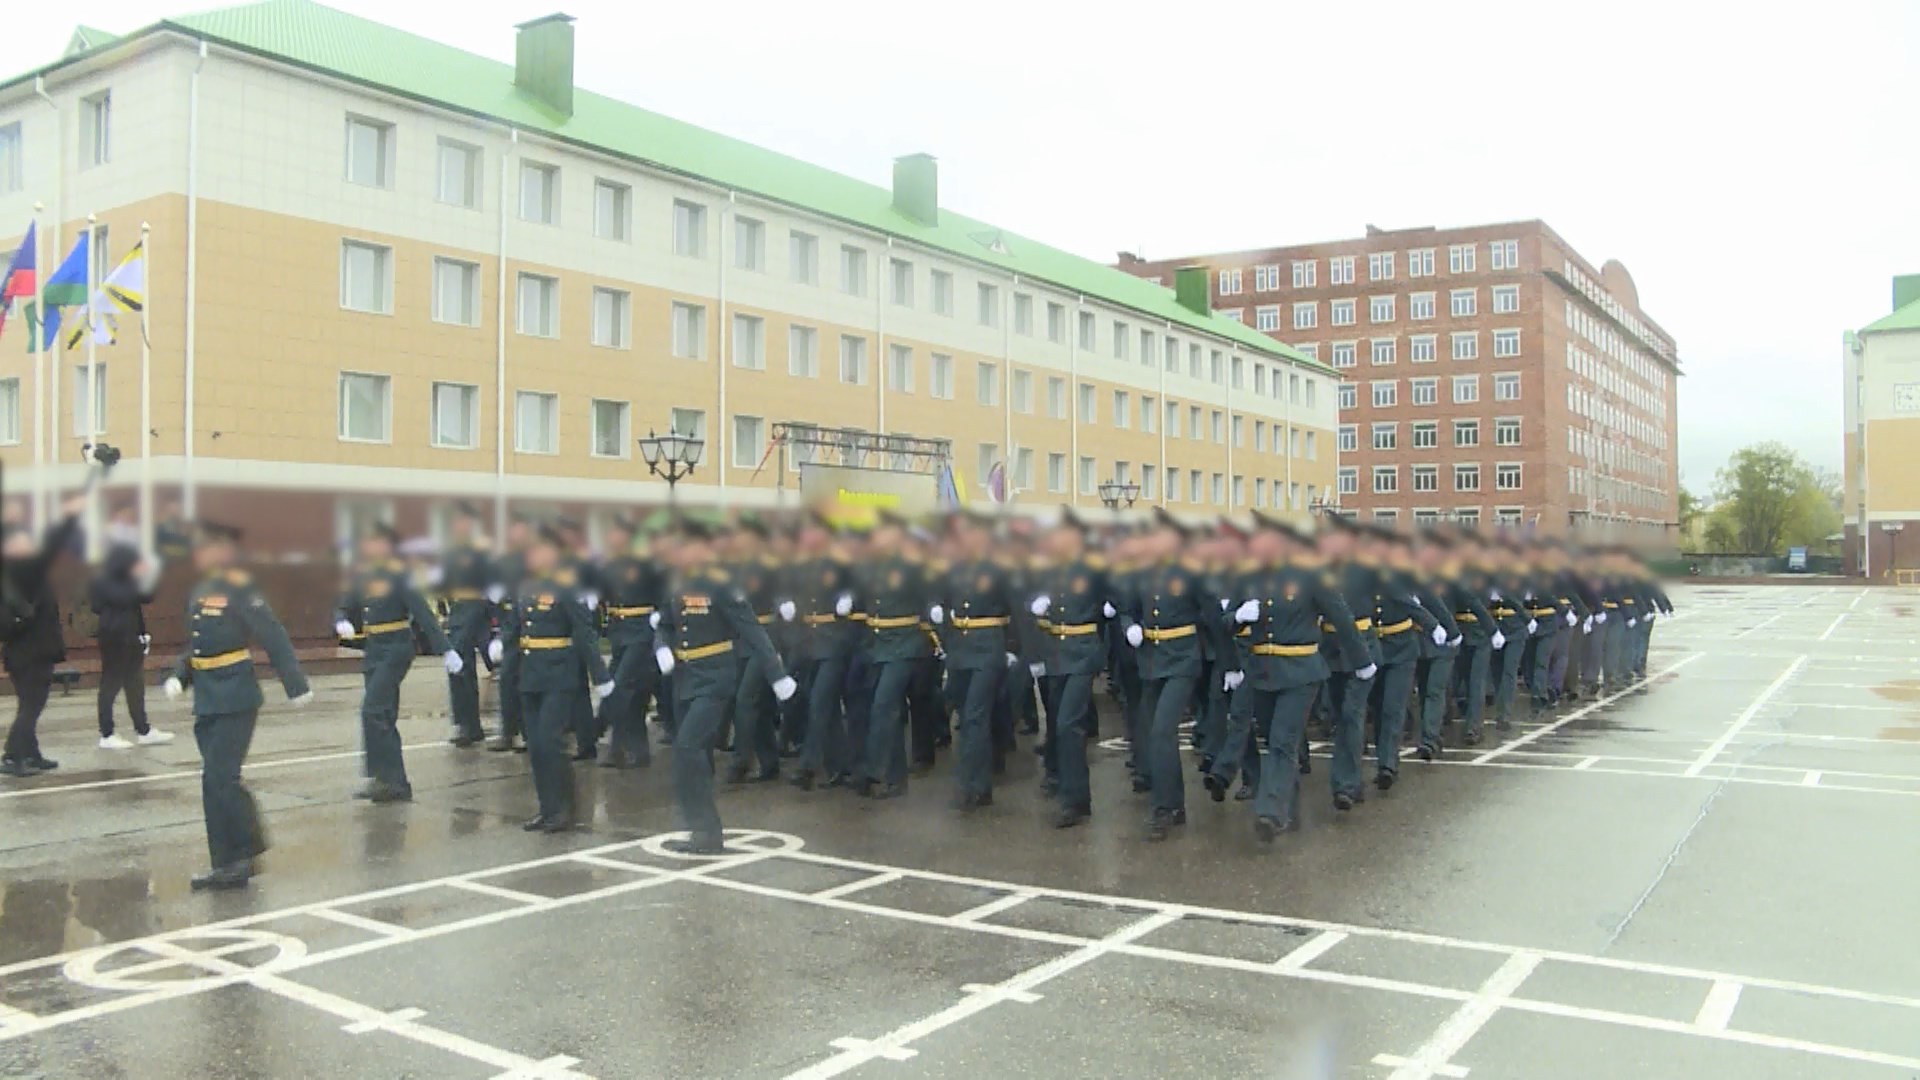 Курсанты костромской военной академии имени Тимошенко отпраздновали выпускной 